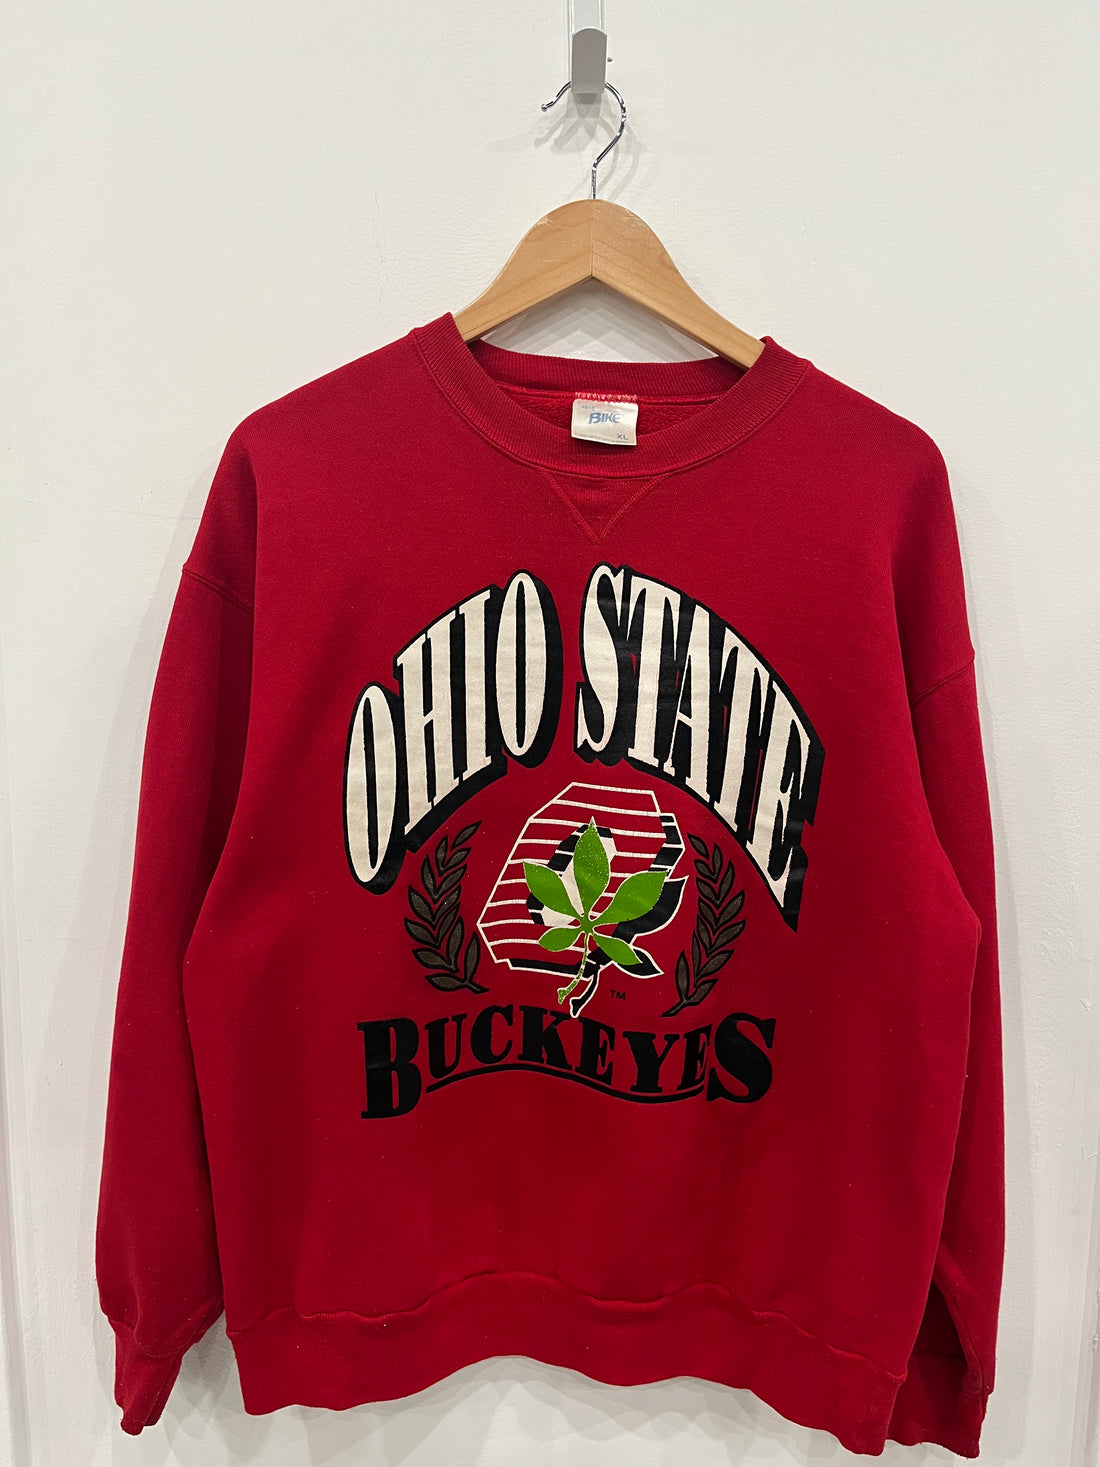 Ohio State Buckeyes sweatshirt